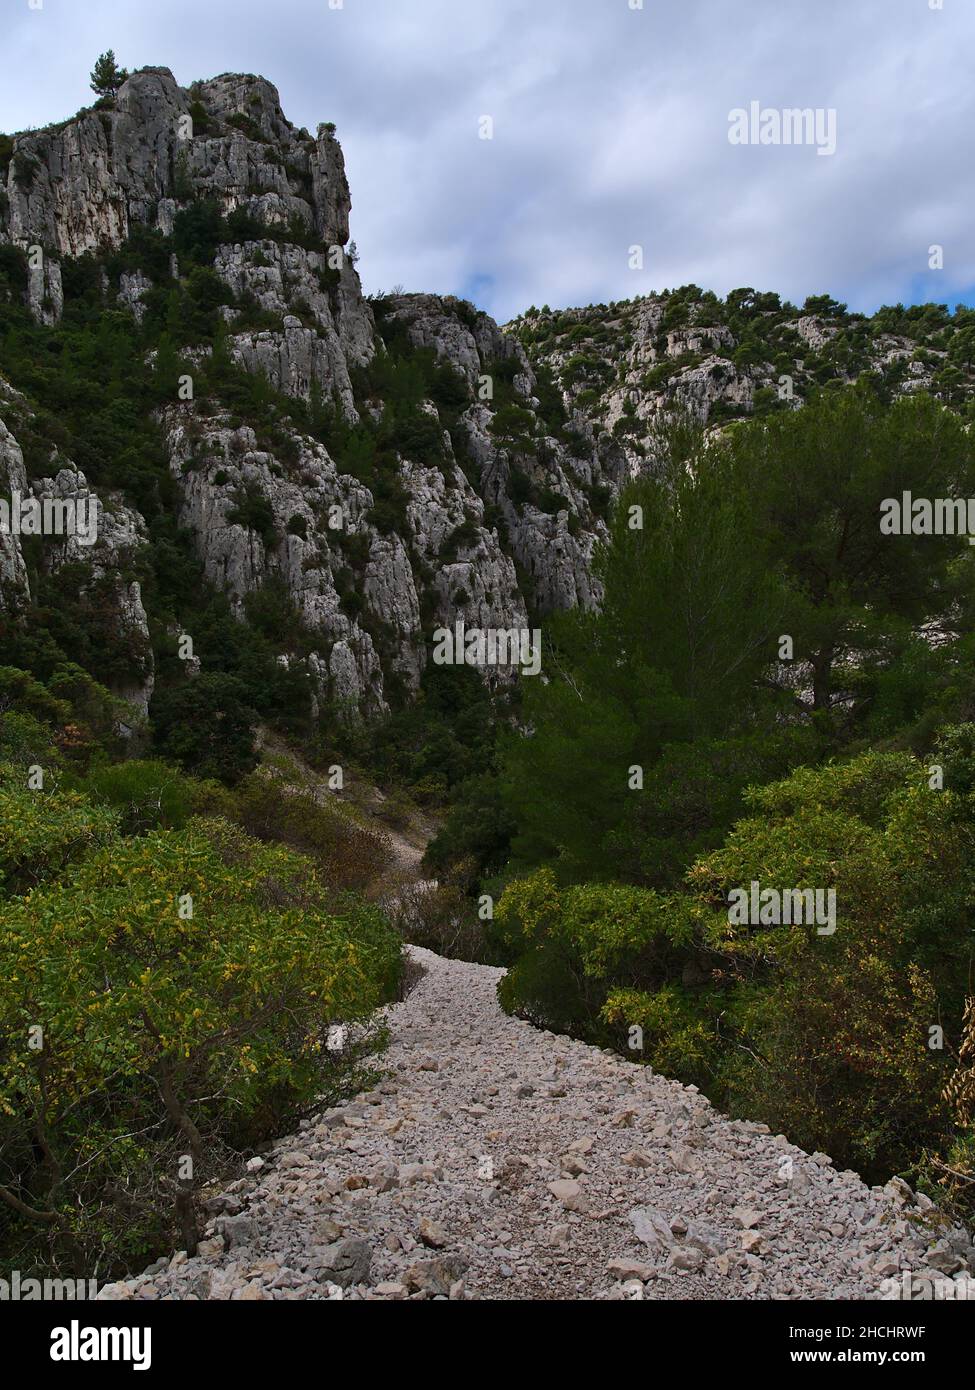 Felsiger Wanderweg am Hang im Nationalpark Calanques in der Nähe von Cassis, an der französischen Riviera am mittelmeer mit schroffen Felsen und grüner Vegetation. Stockfoto